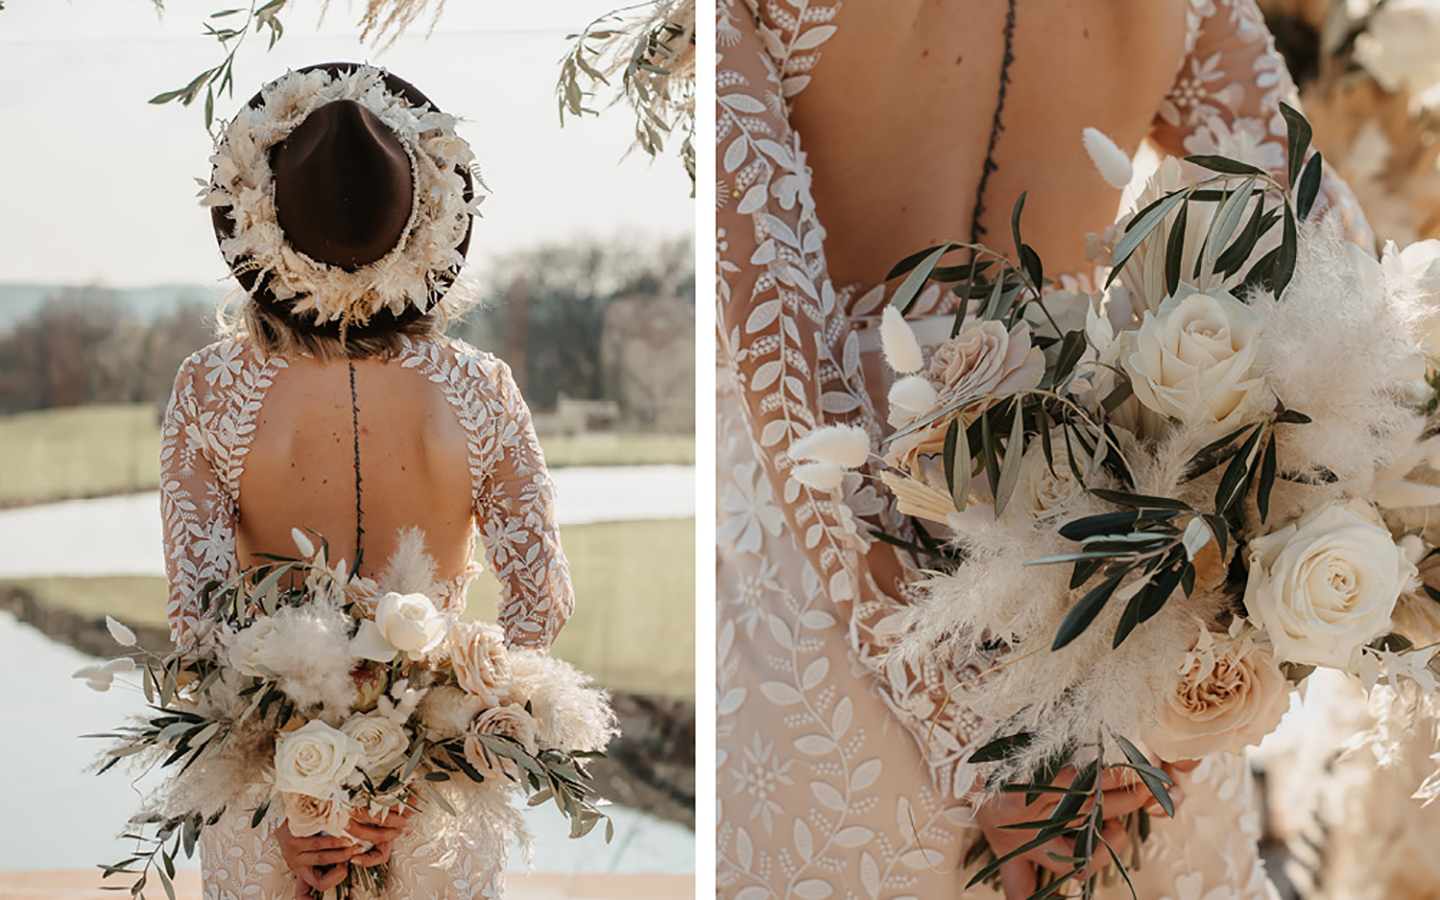 Die Braut ist von Hinten zu sehen, der ausschnitt des Kleides kommt so zur Geltung. Sie trägt einen dunkelbaruenen Hut aus Filz mit Pampasgras geschmückt und einen Brautstrauß in Beige, Grün.